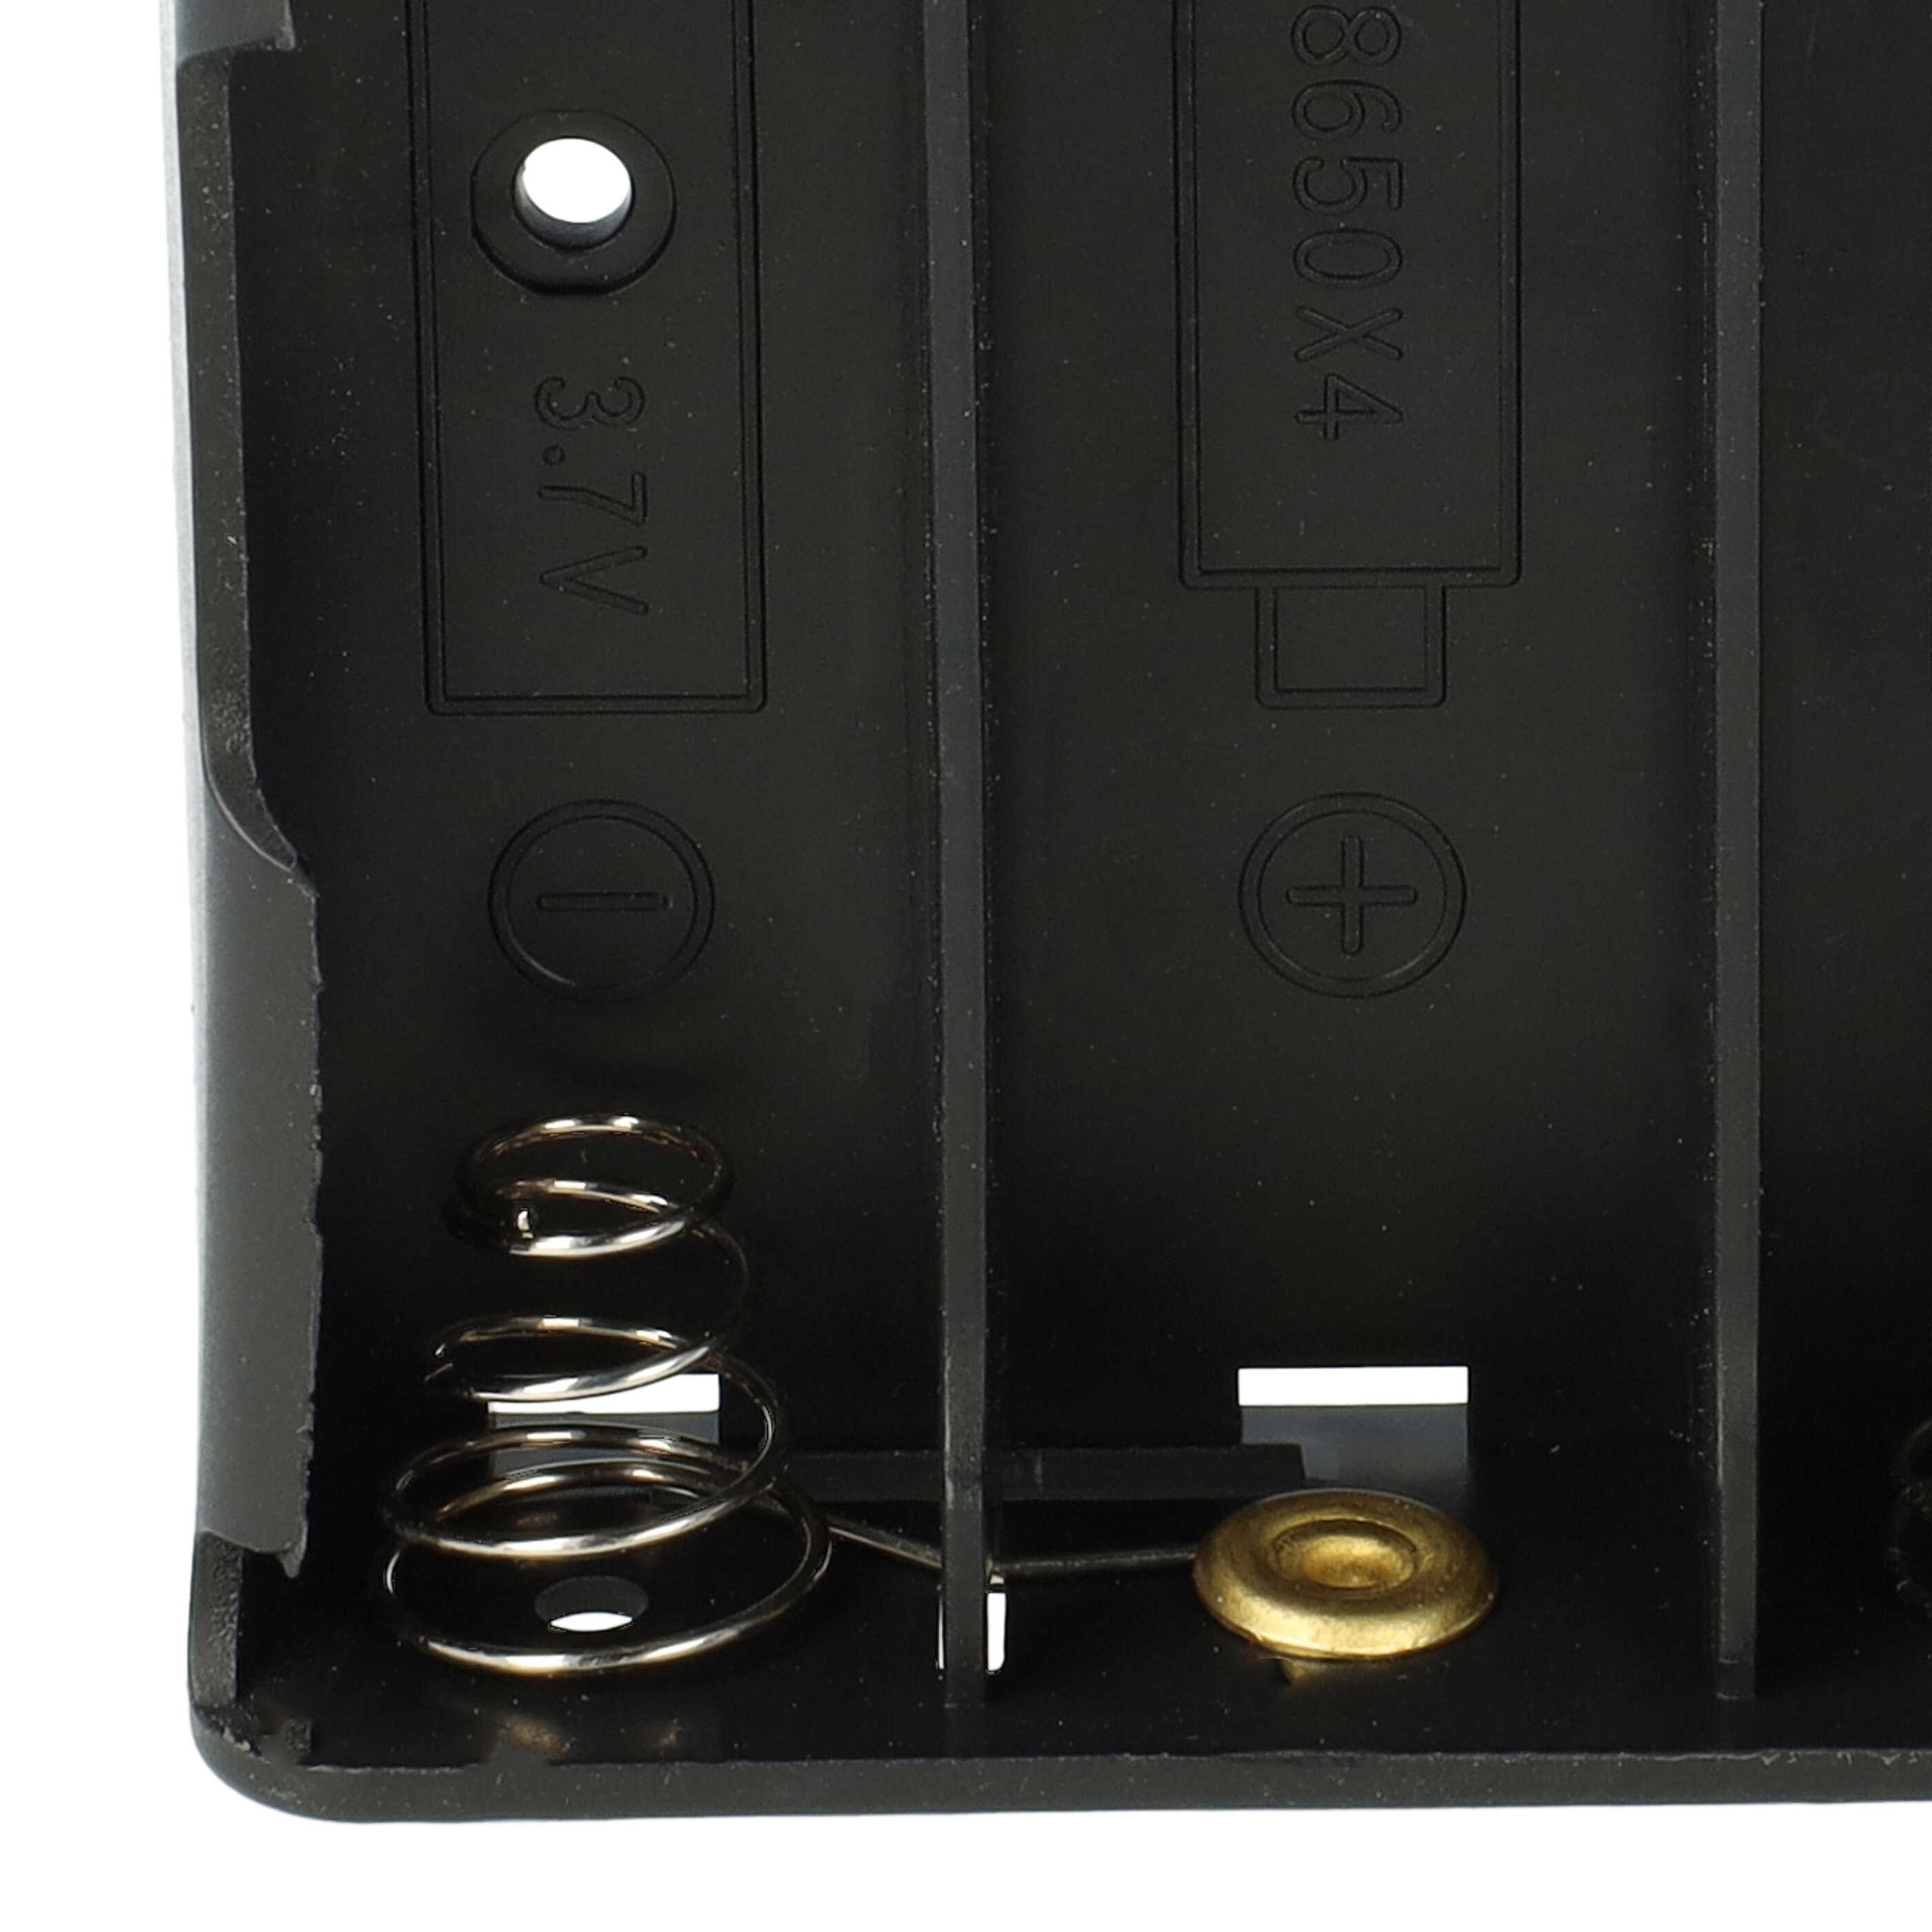 Portabatterie 18650 per celle - supporto con filo, molla a spirale